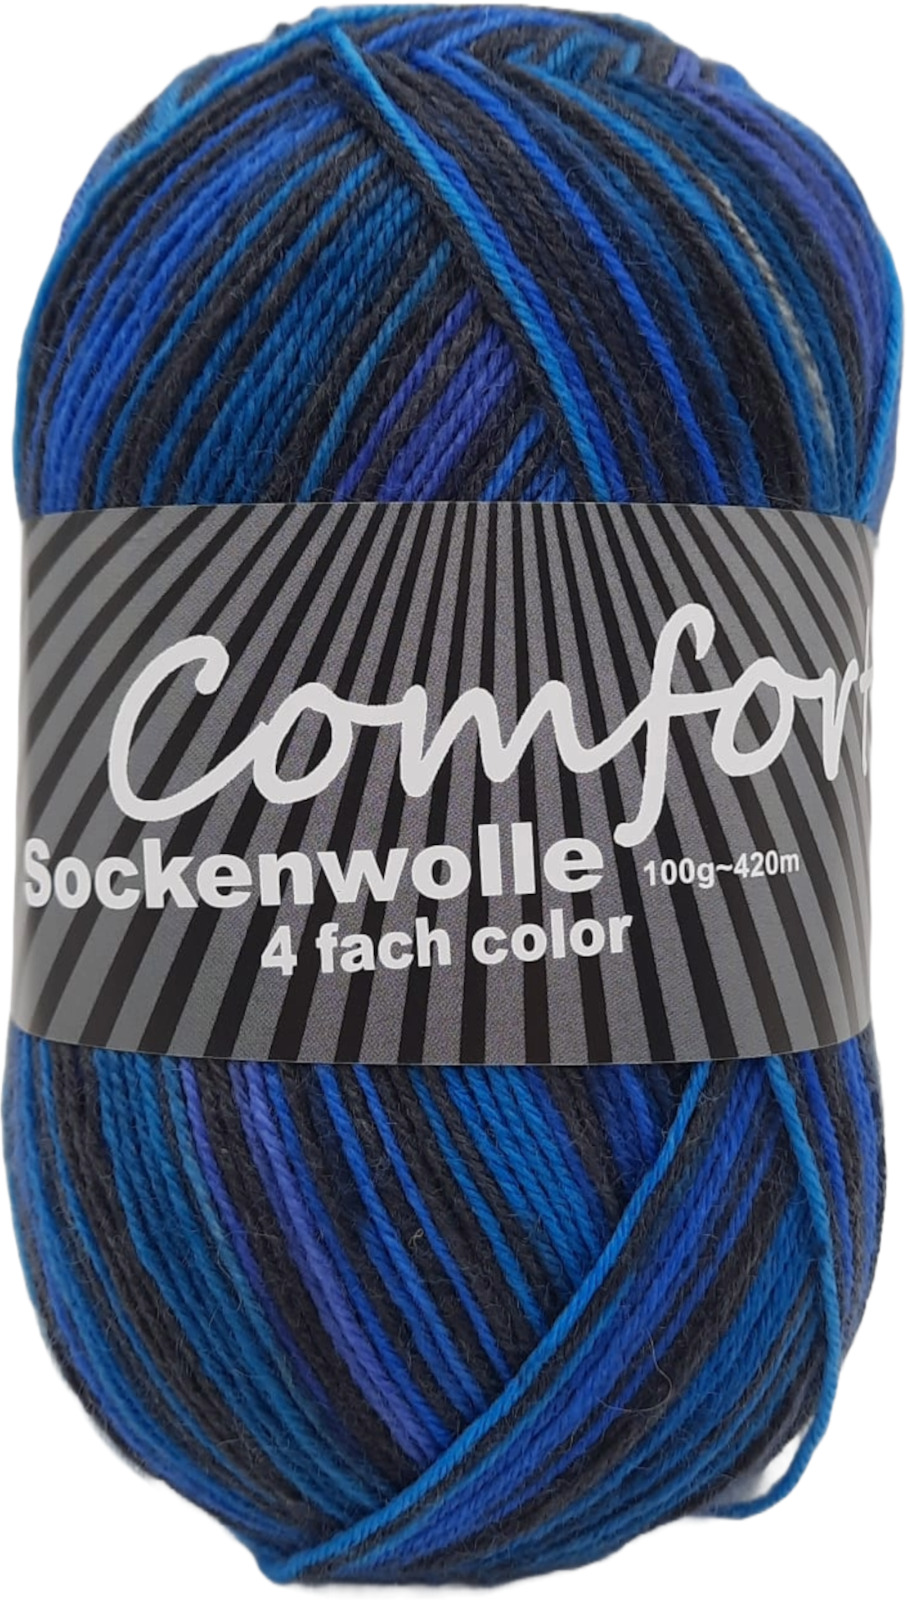 Sockenwolle Strumpfwolle Color 4-fach modische Farben 6x100gr LL420m100gr Kn.